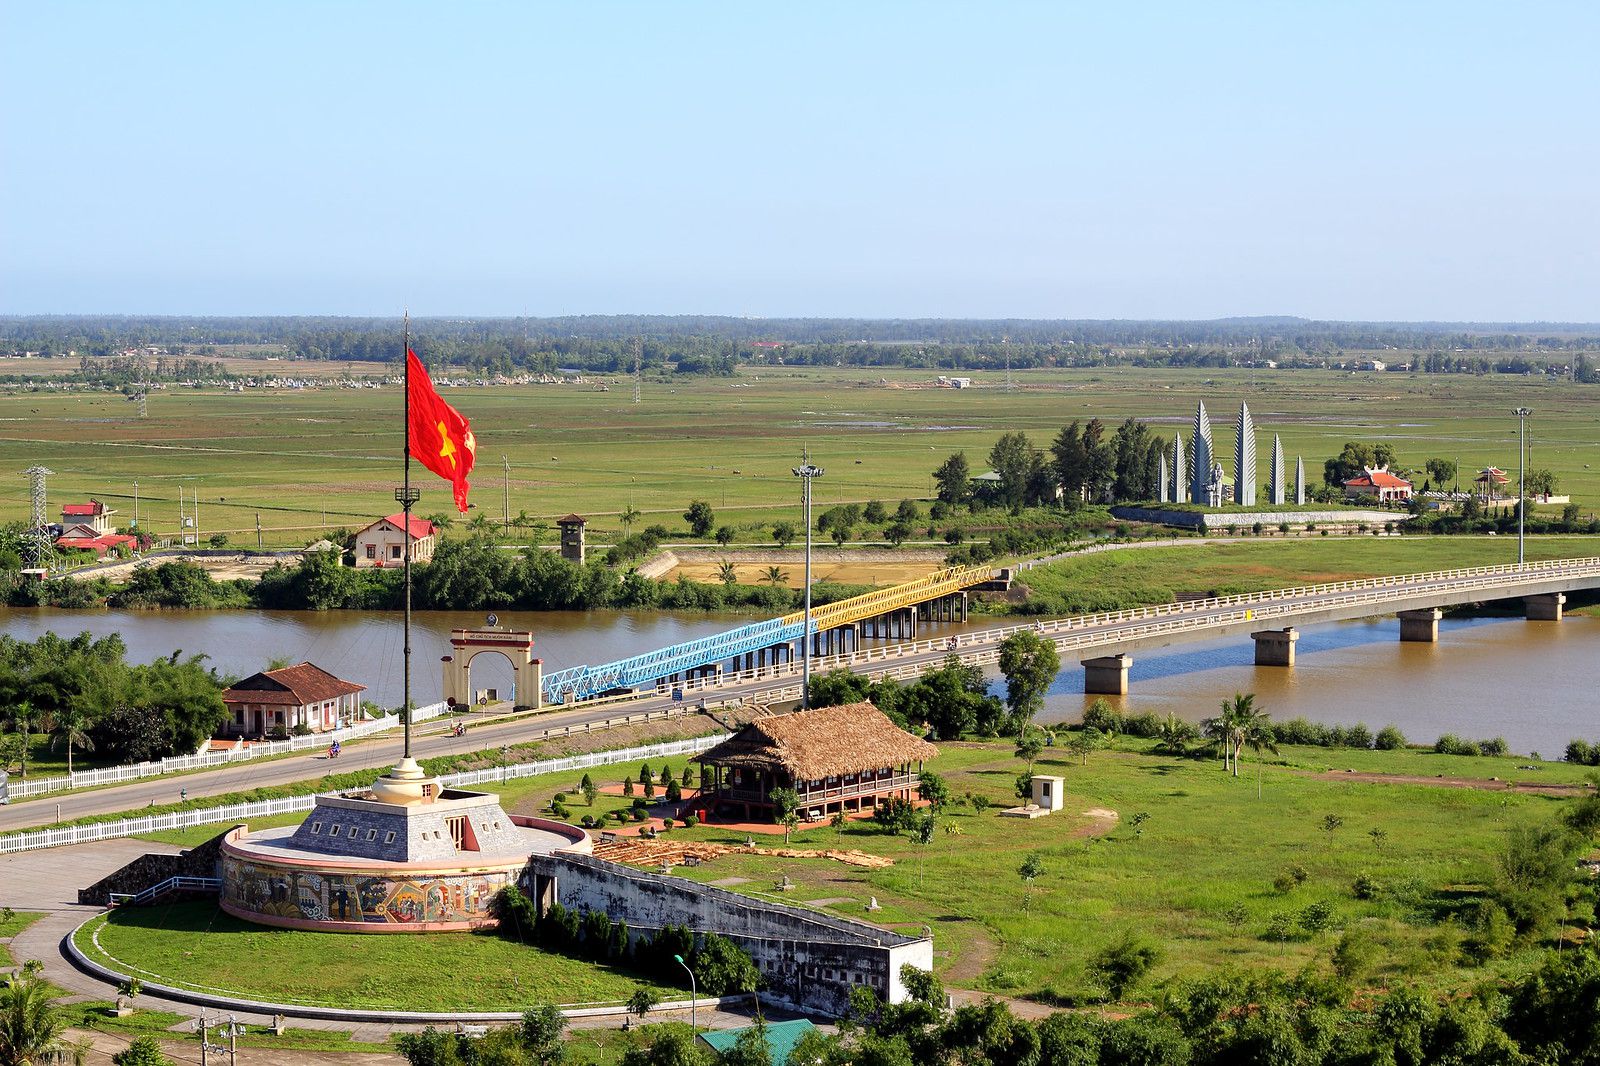 Tìm hiểu cụm di tích lịch sử Cầu Hiền Lương - Sông Bến Hải Quảng Trị